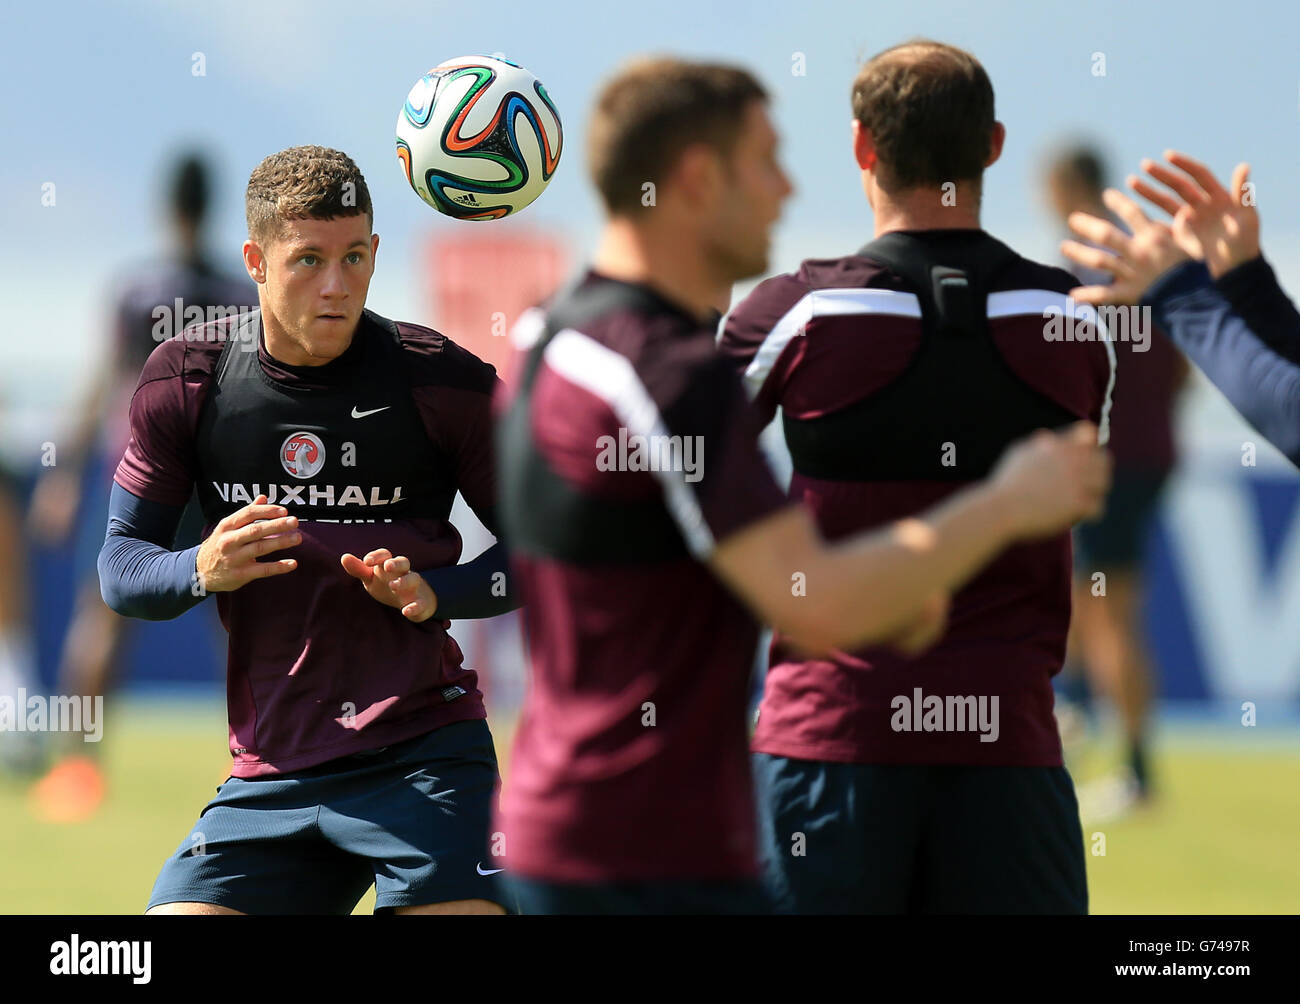 Fußball - FIFA WM 2014 - Gruppe D - Uruguay V England - England-Training und Pressekonferenz - Urca militärischen Training G... Stockfoto